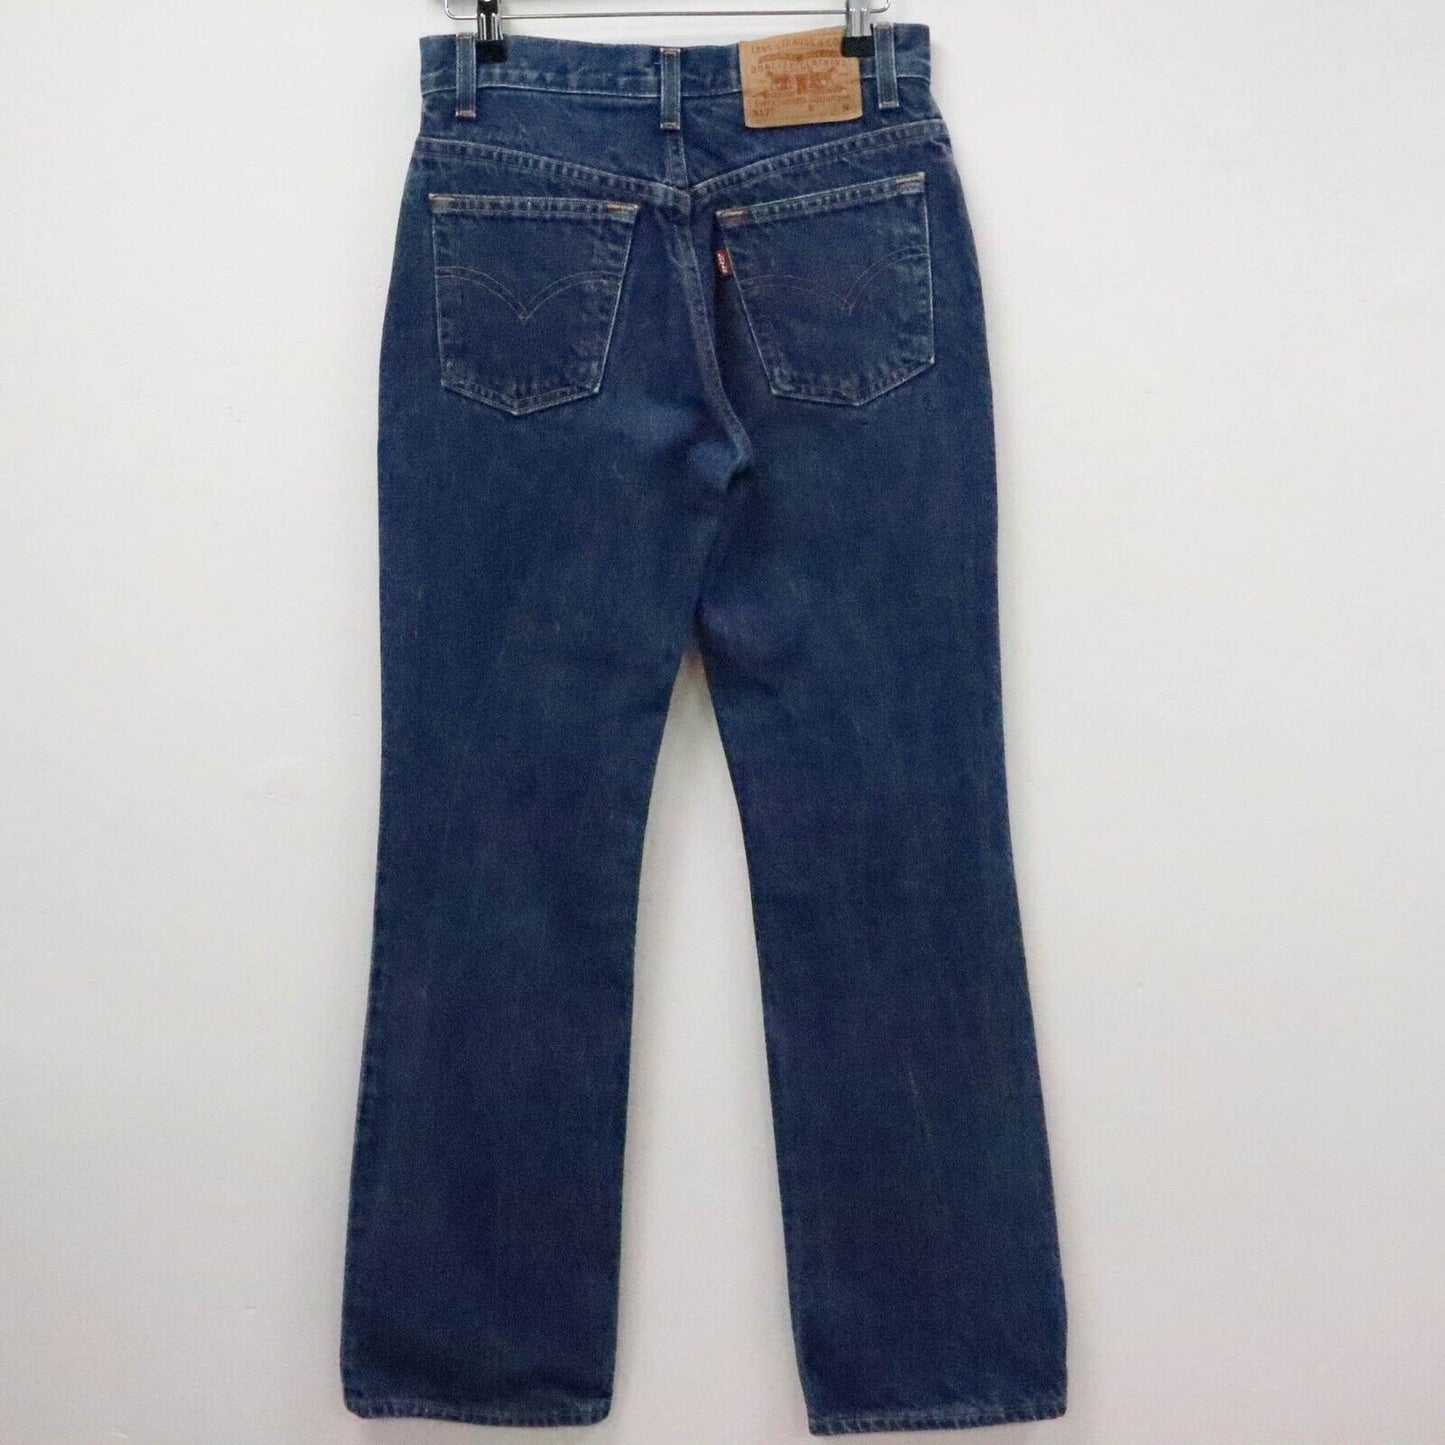 Vintage Levi’s 517 Bootcut Jeans UK 8 W28 L31